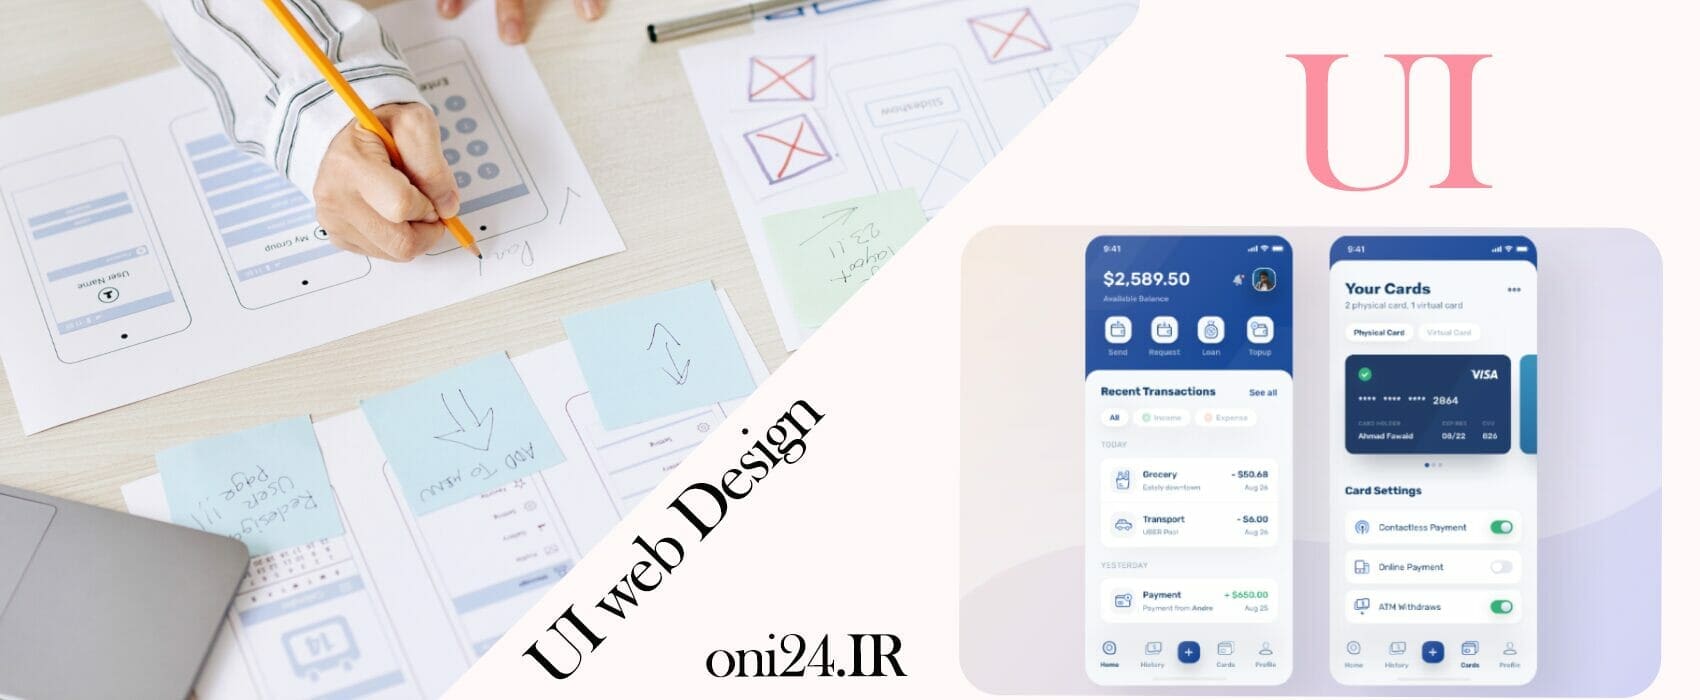 عکس محتوا UI - UI چیست 5 مرحله طراحی رابطه کاربری